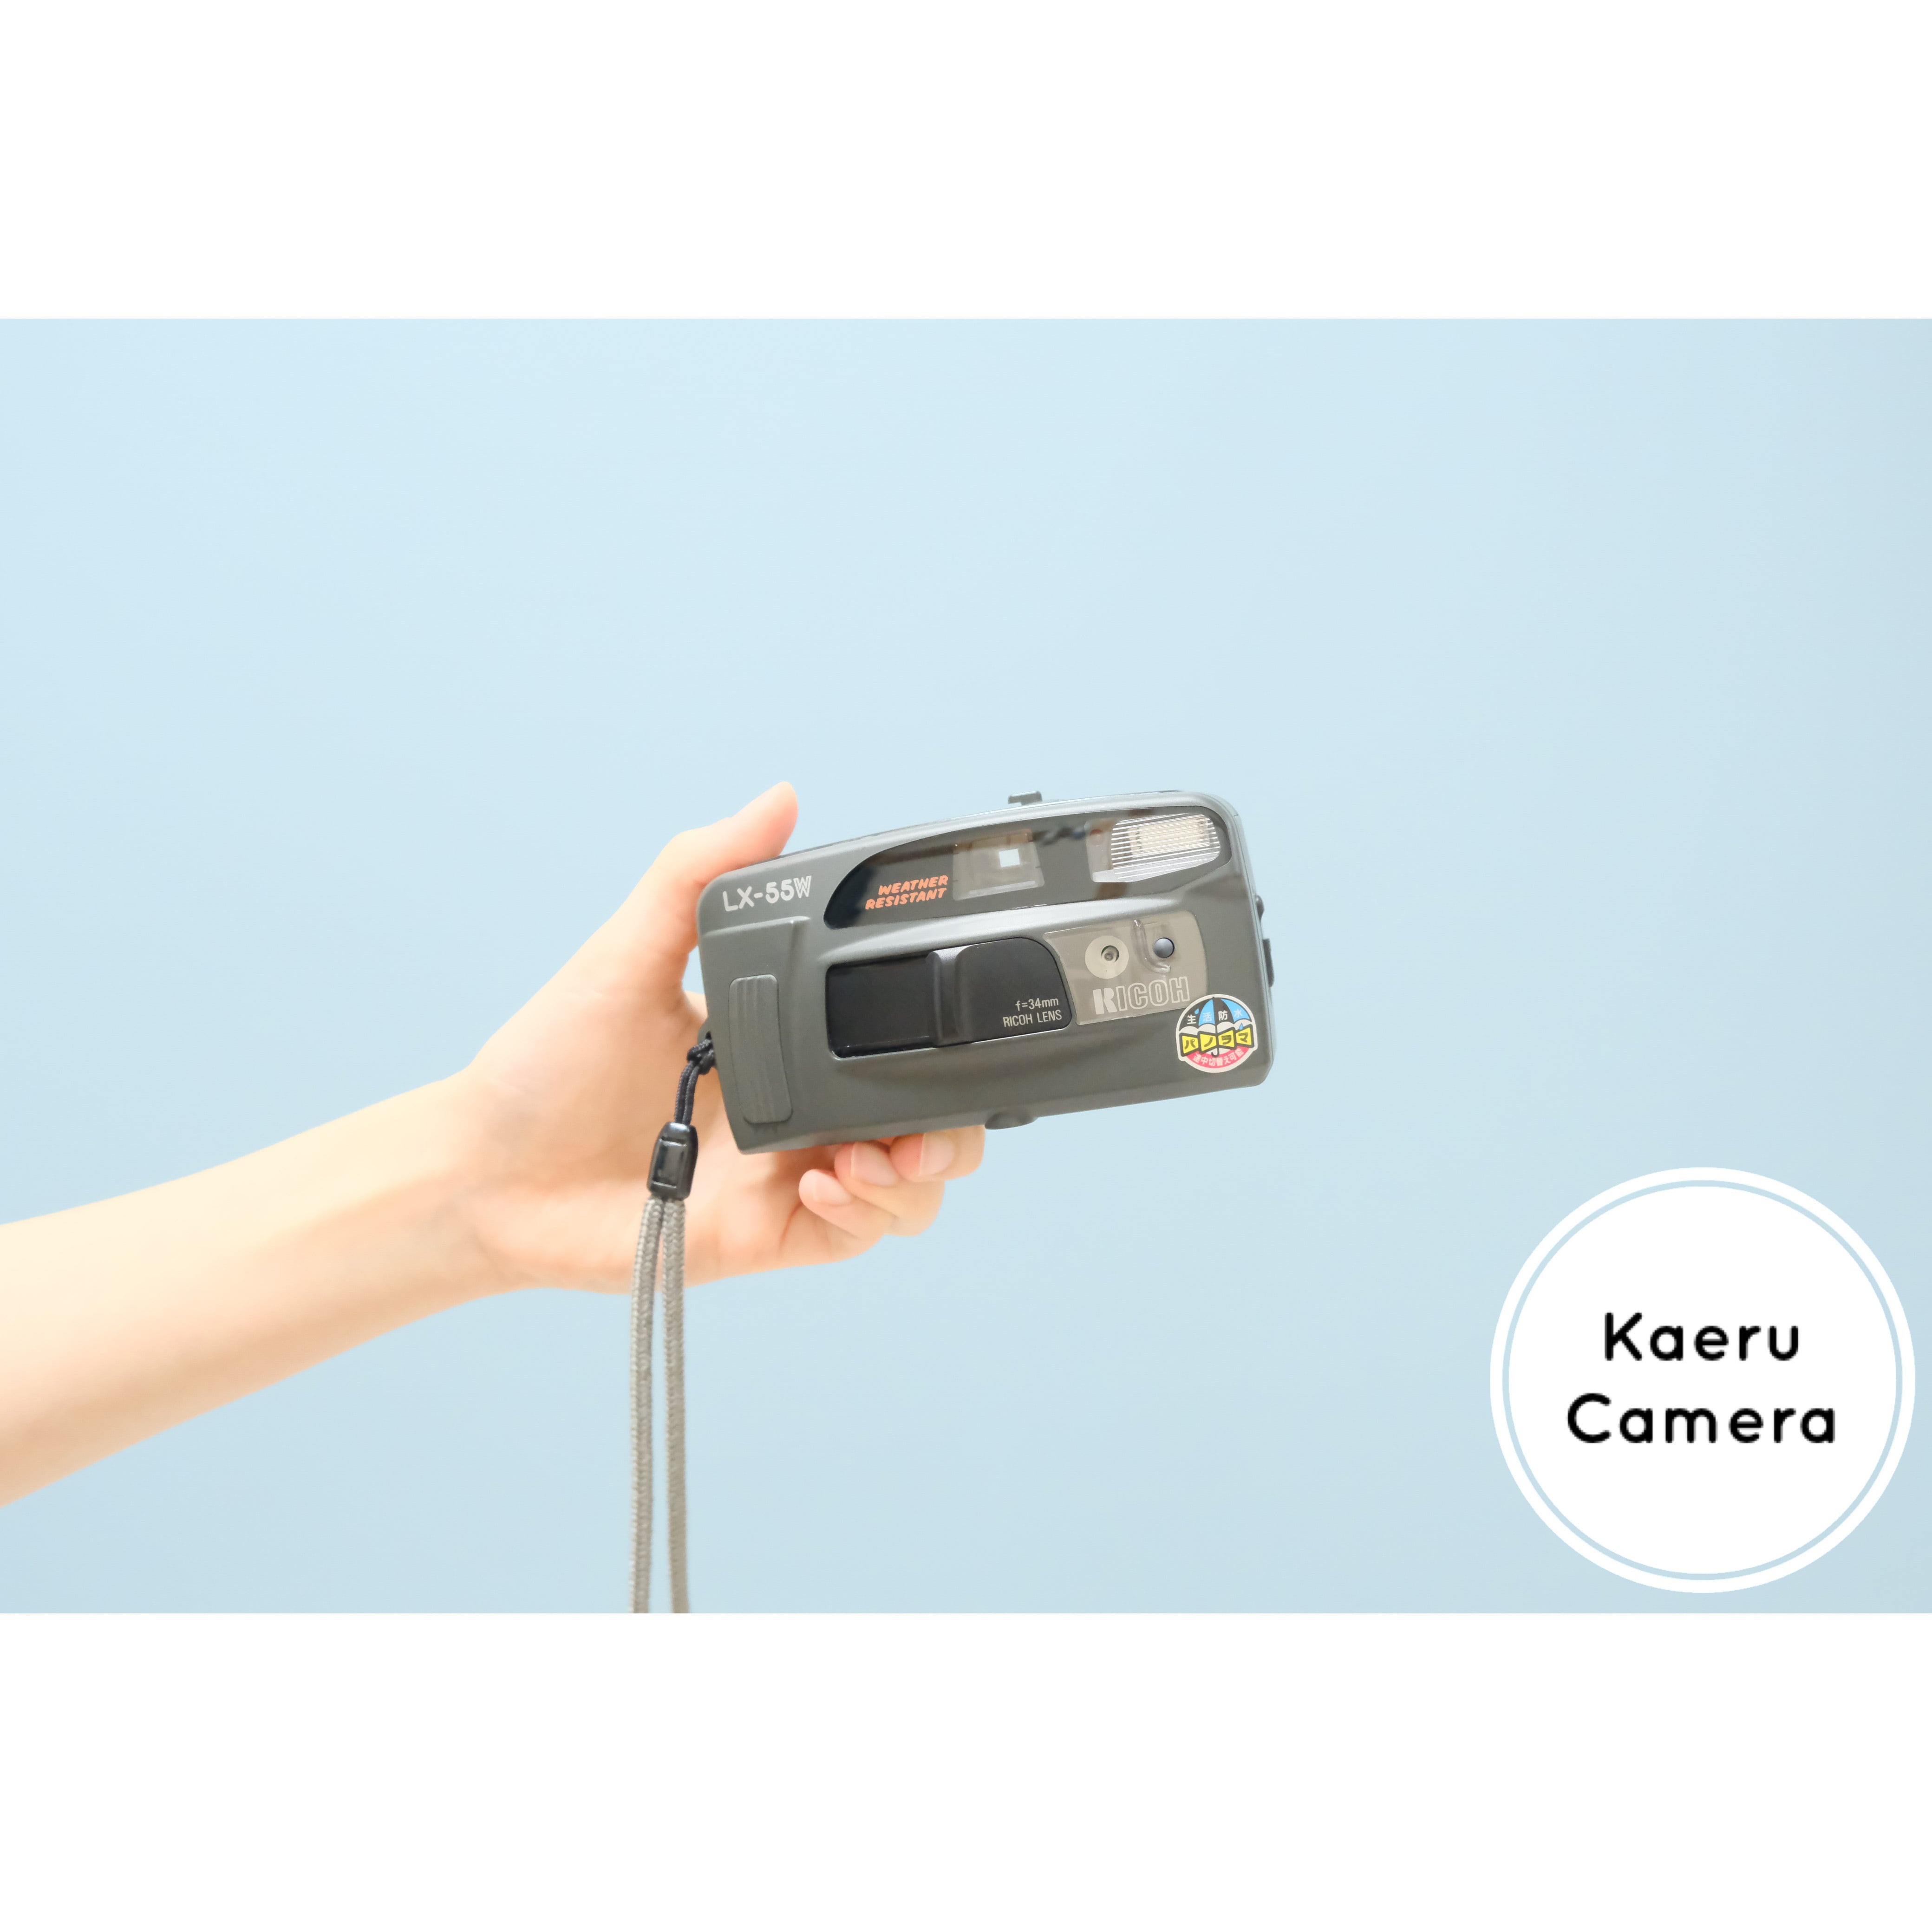 完動整備品 リコー LX-55W コンパクトフィルムカメラ ストロボ シャッター